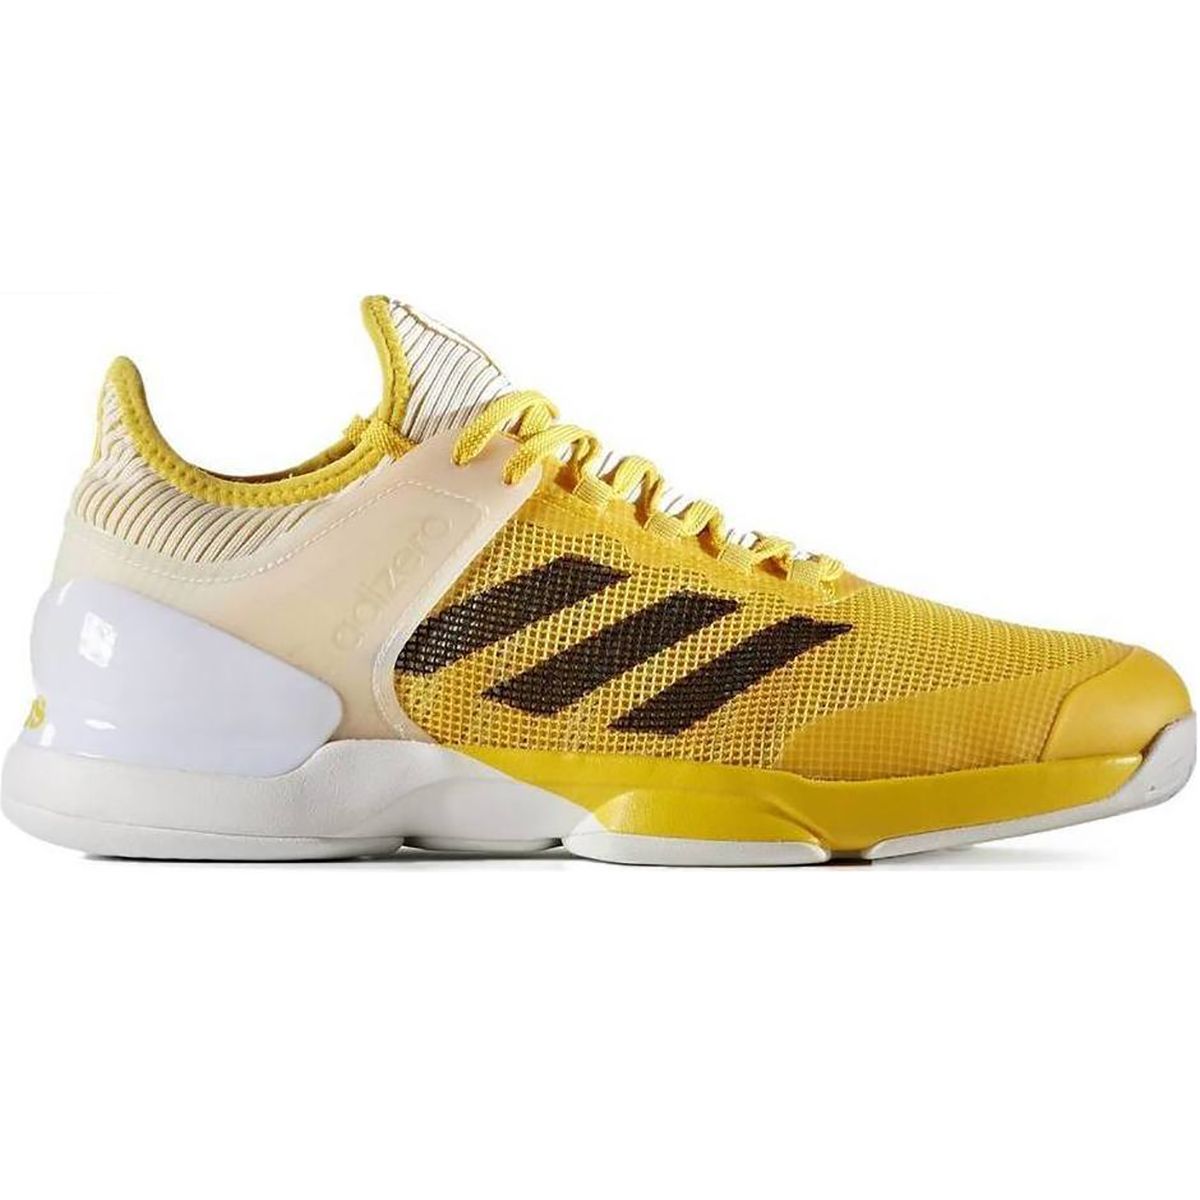 Adidas Adizero Ubersonic 2 Mens Tennis Shoes CG3083